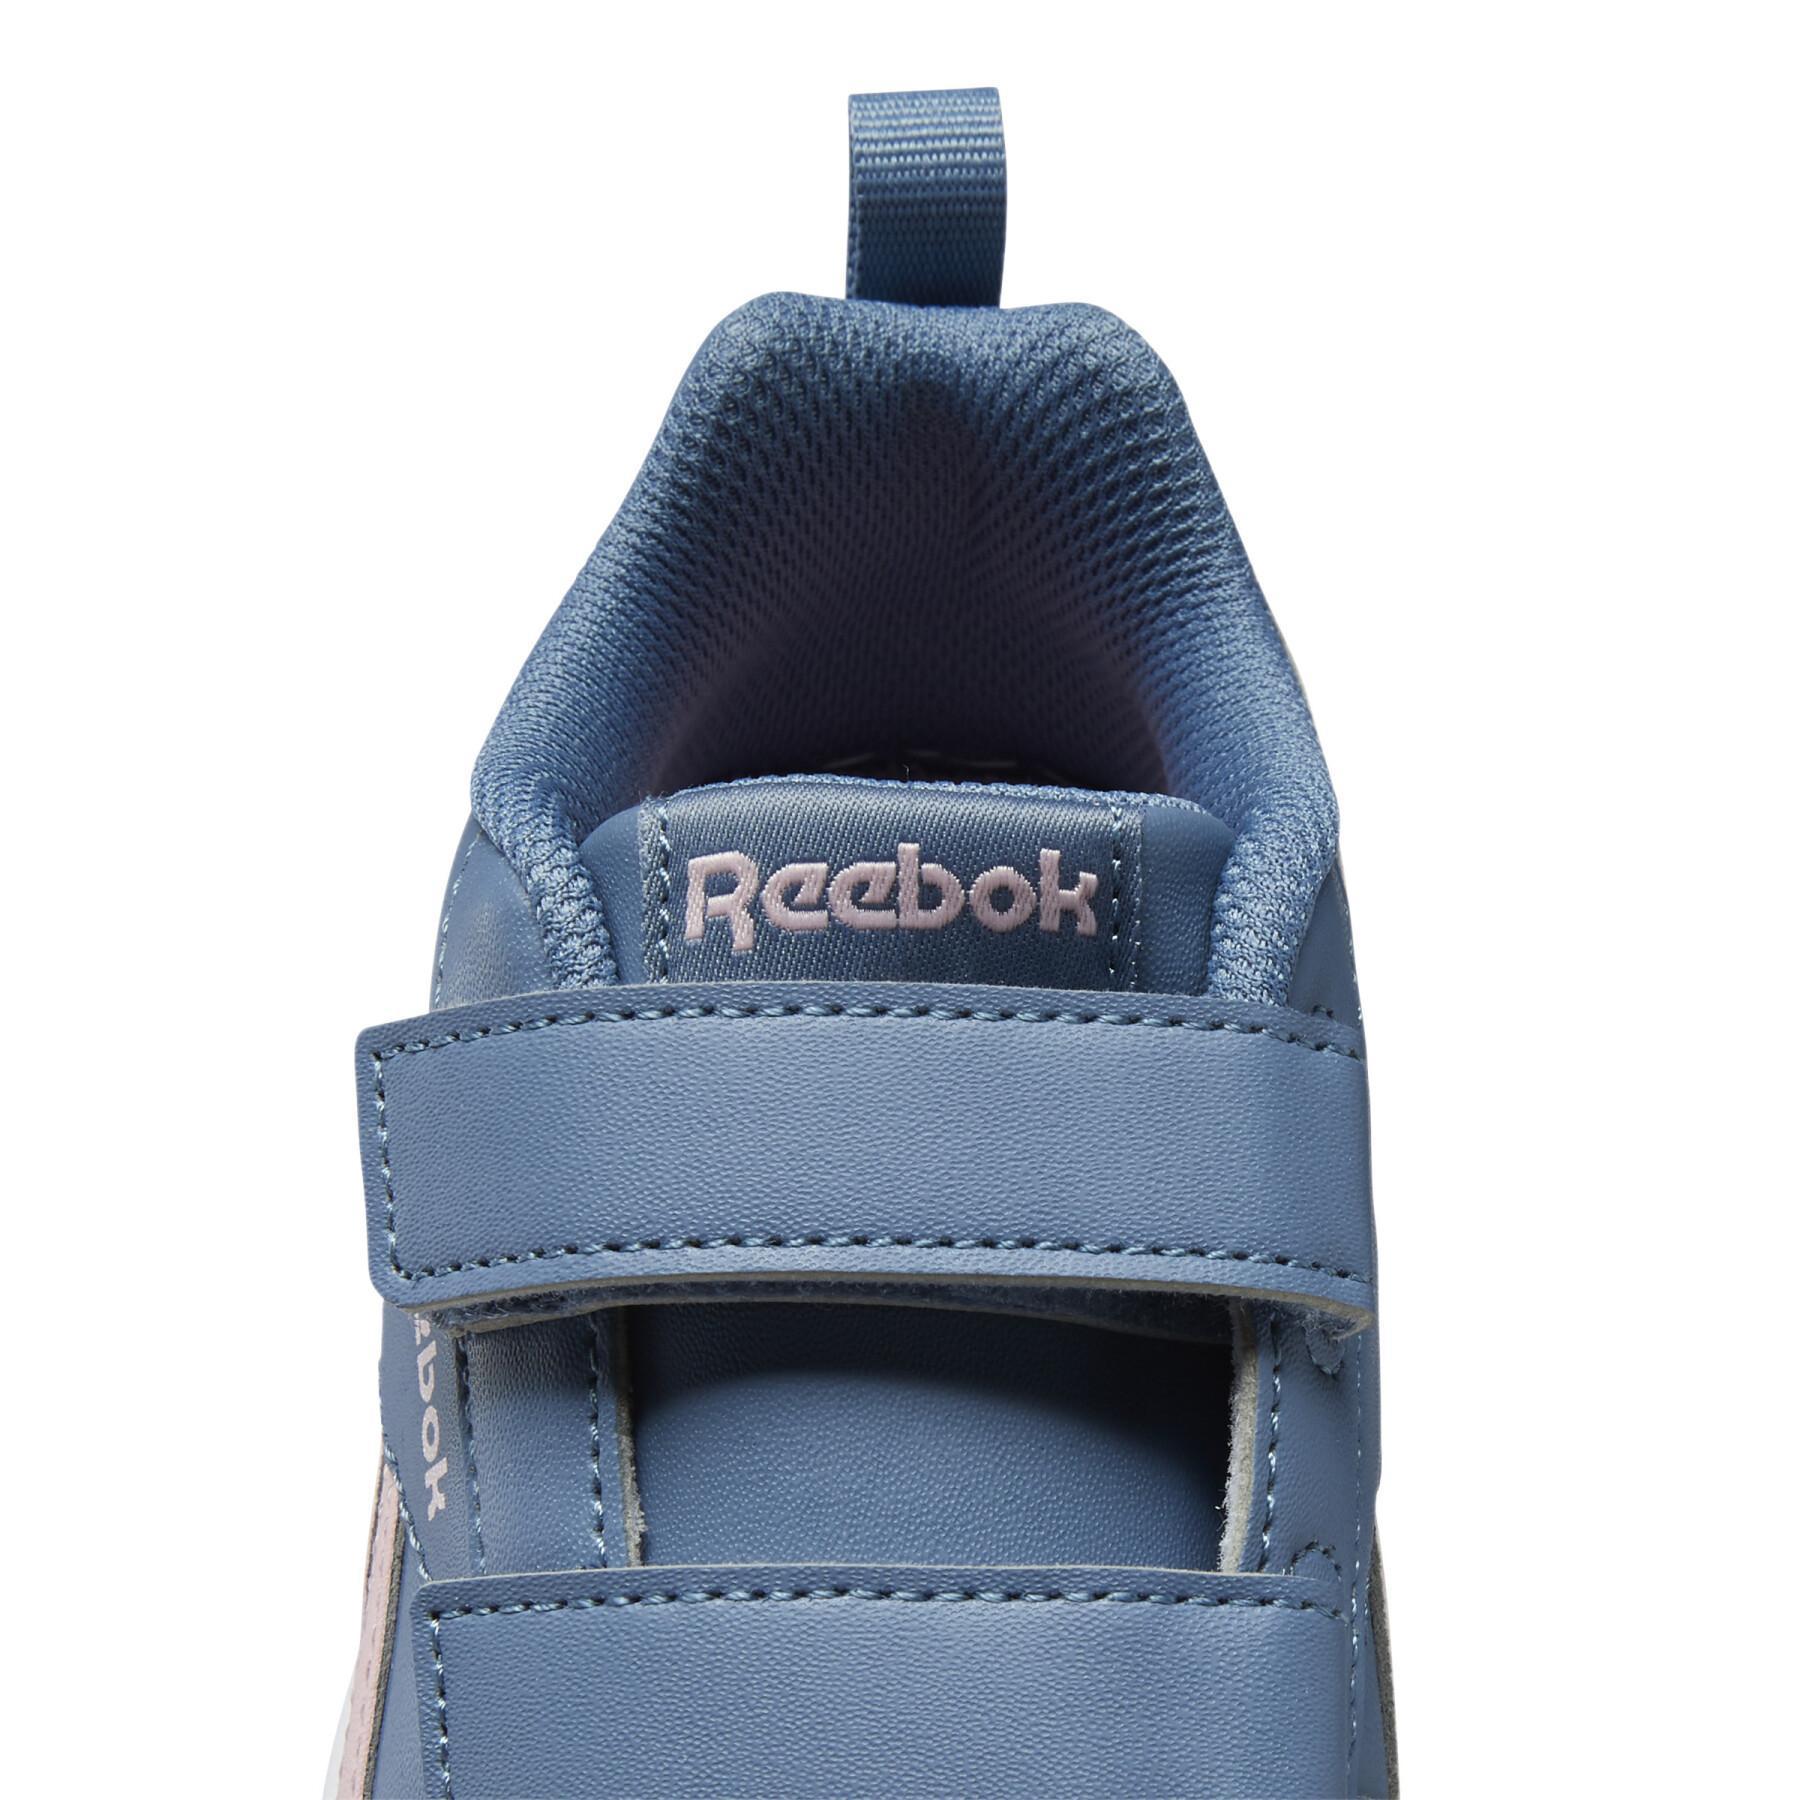 Schuhe für Mädchen Reebok Royal Prime 2